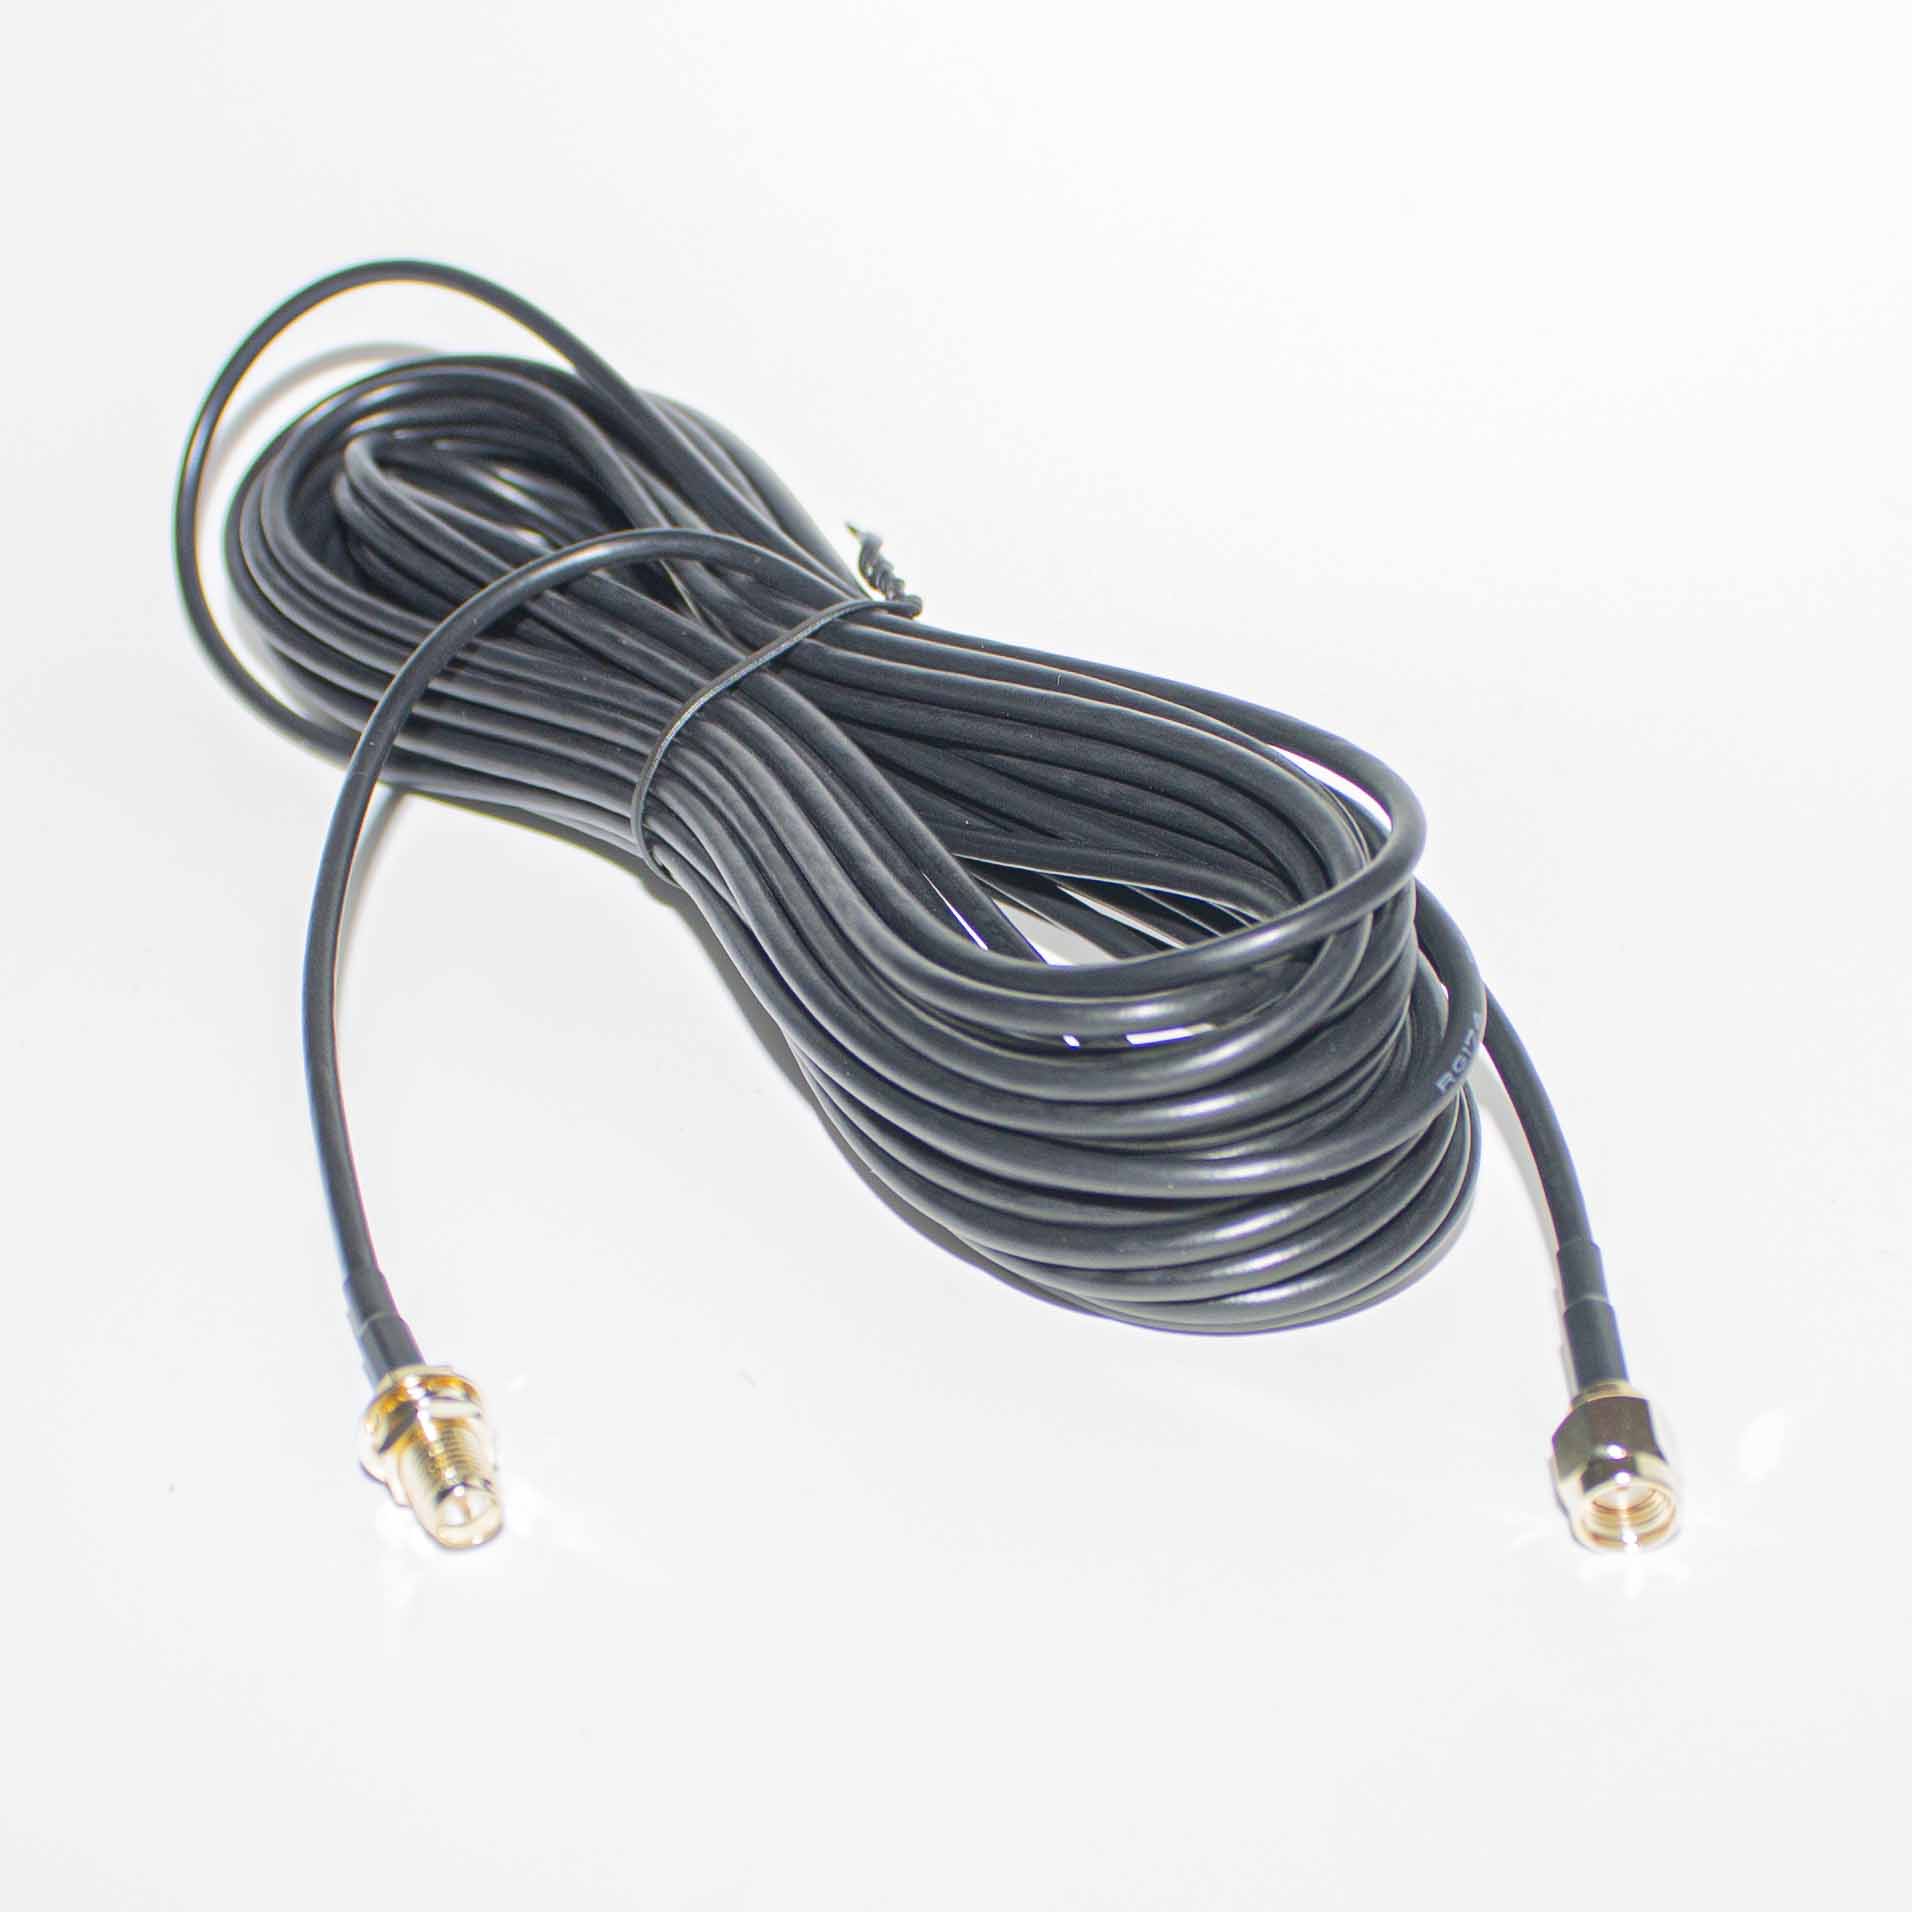 Подробнее о статье Новинка!!!Удлинитель высокочастотного кабеля с разъемами RP-SMA(male) и RP-SMA(female) 